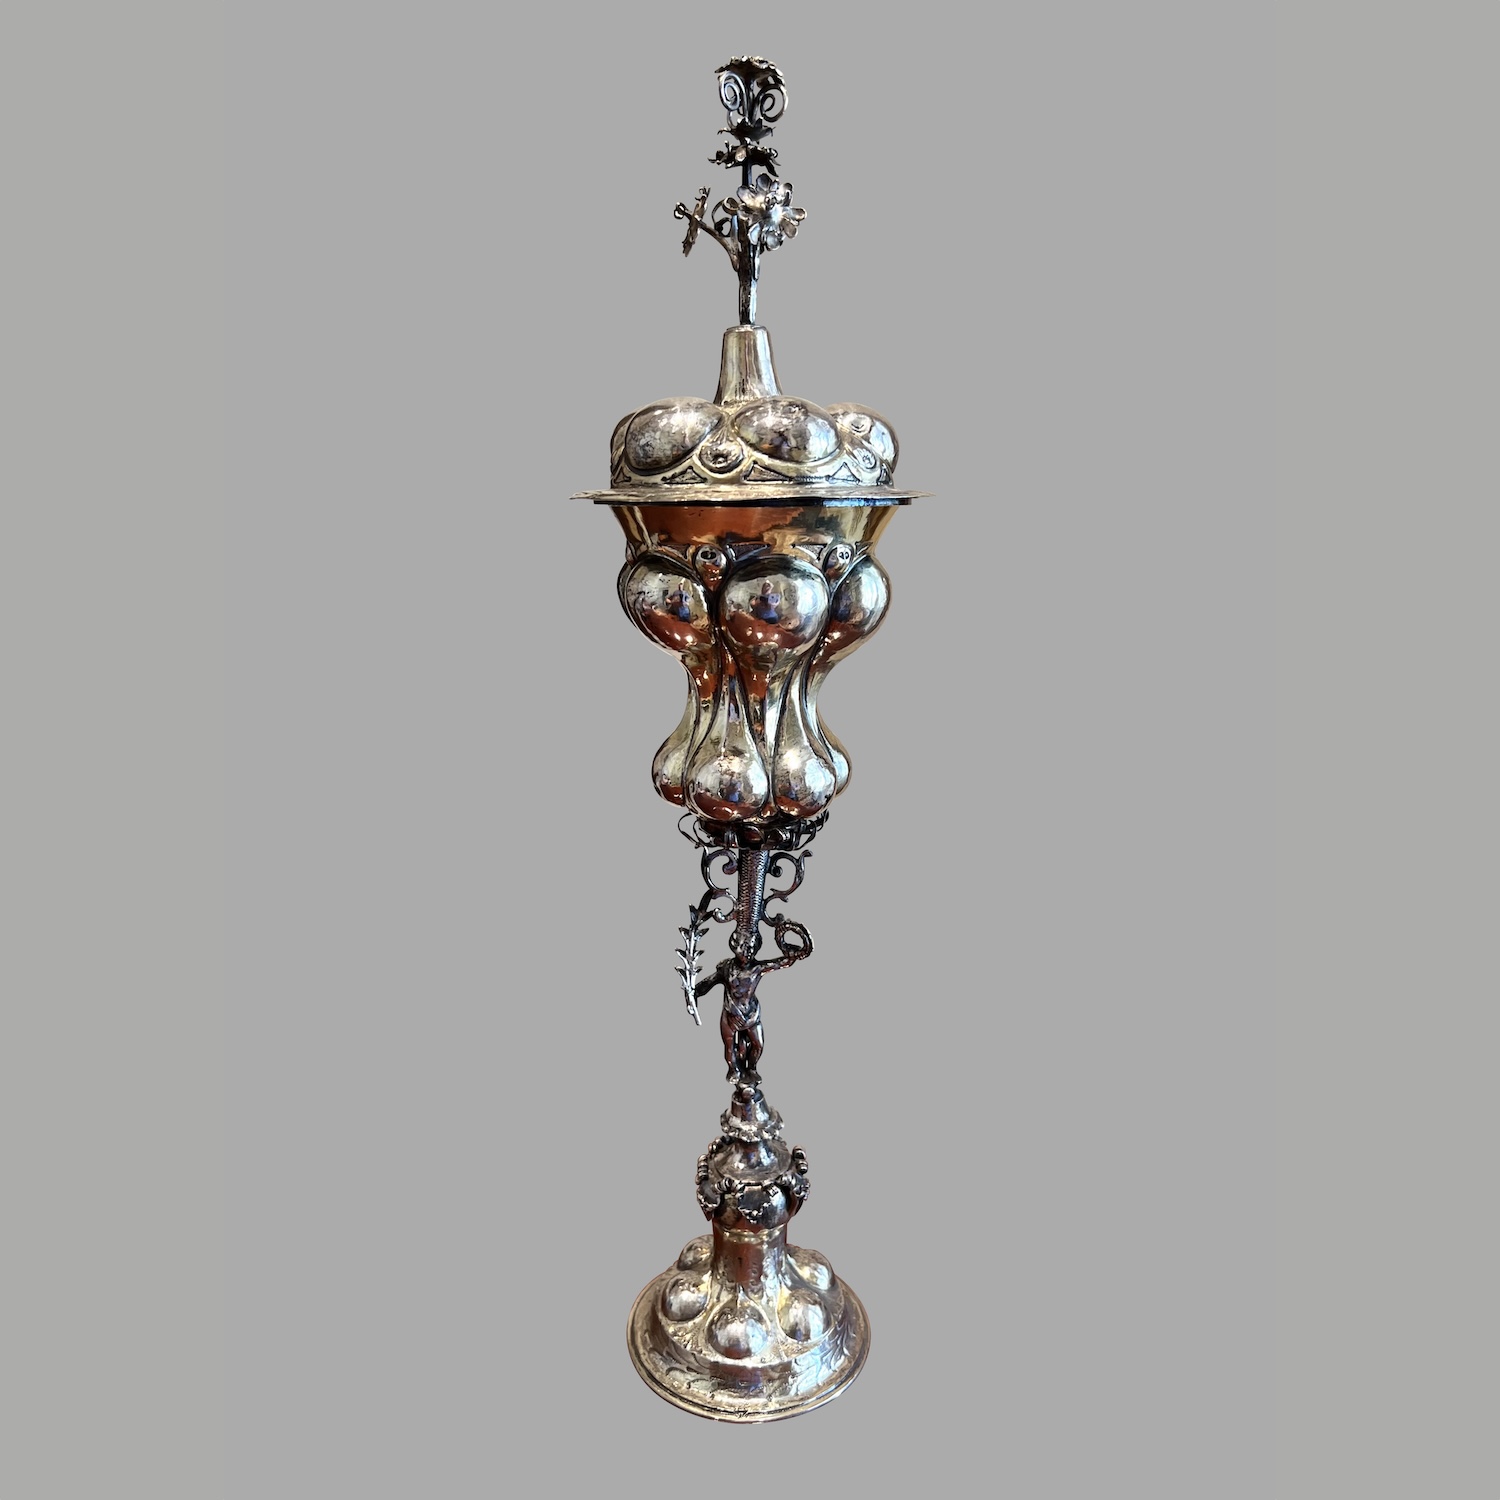 seventeenth-century-nuremberg-silver-gilt-goblet-cover-a1021-41